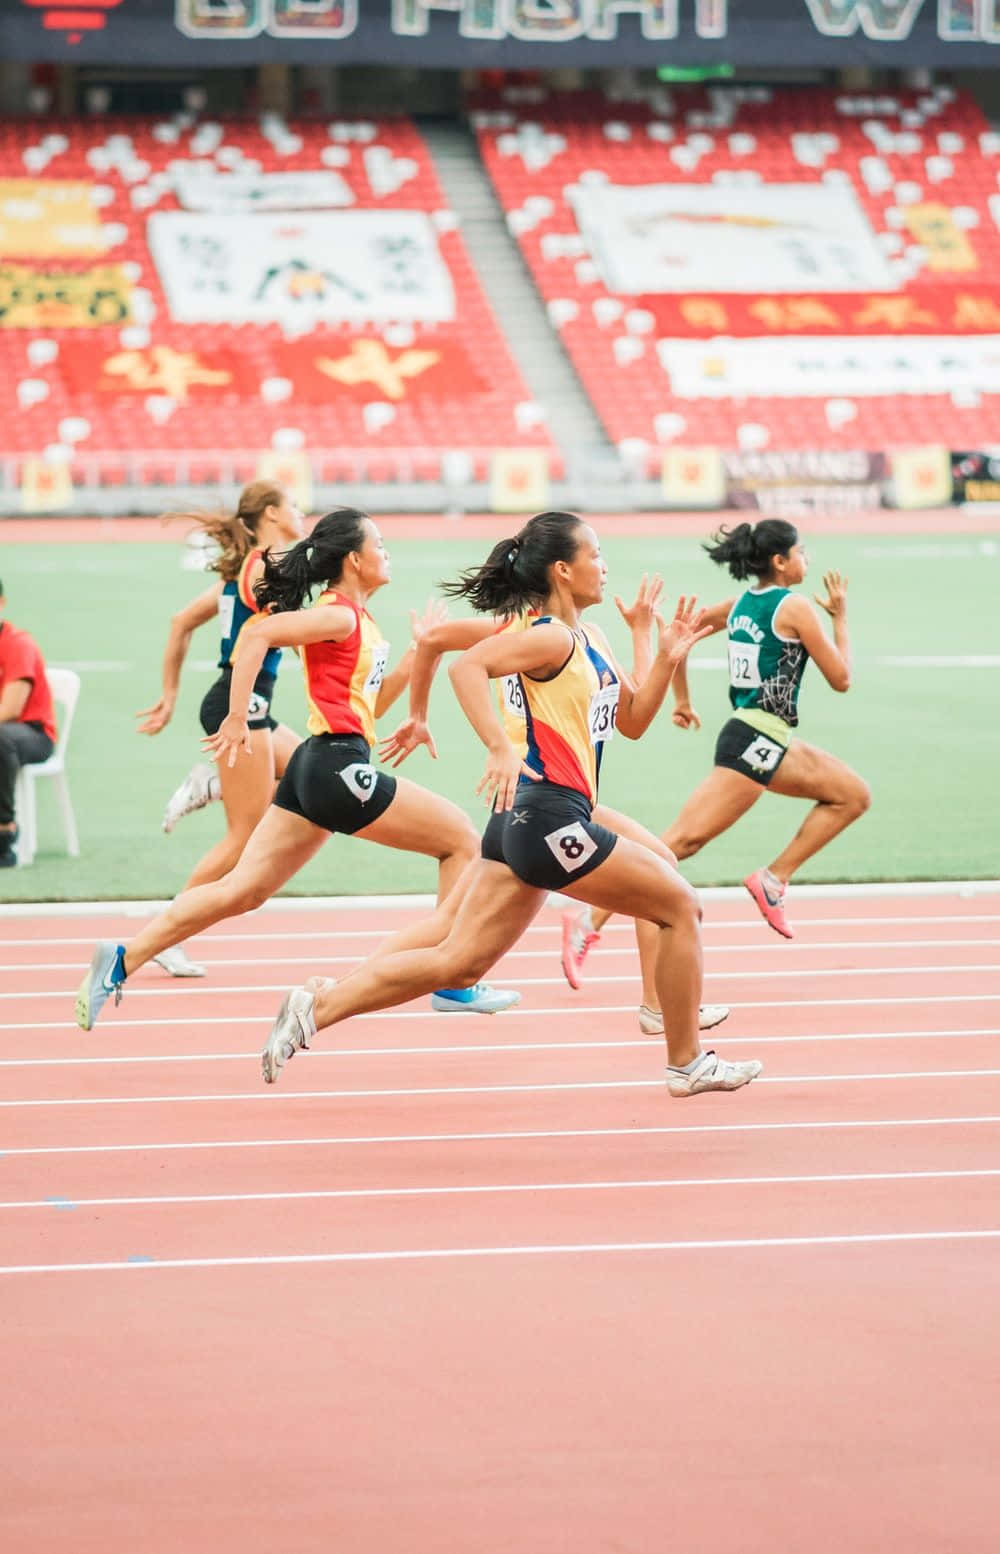 Ungrupo De Mujeres Corriendo En Una Pista En Un Estadio. Fondo de pantalla